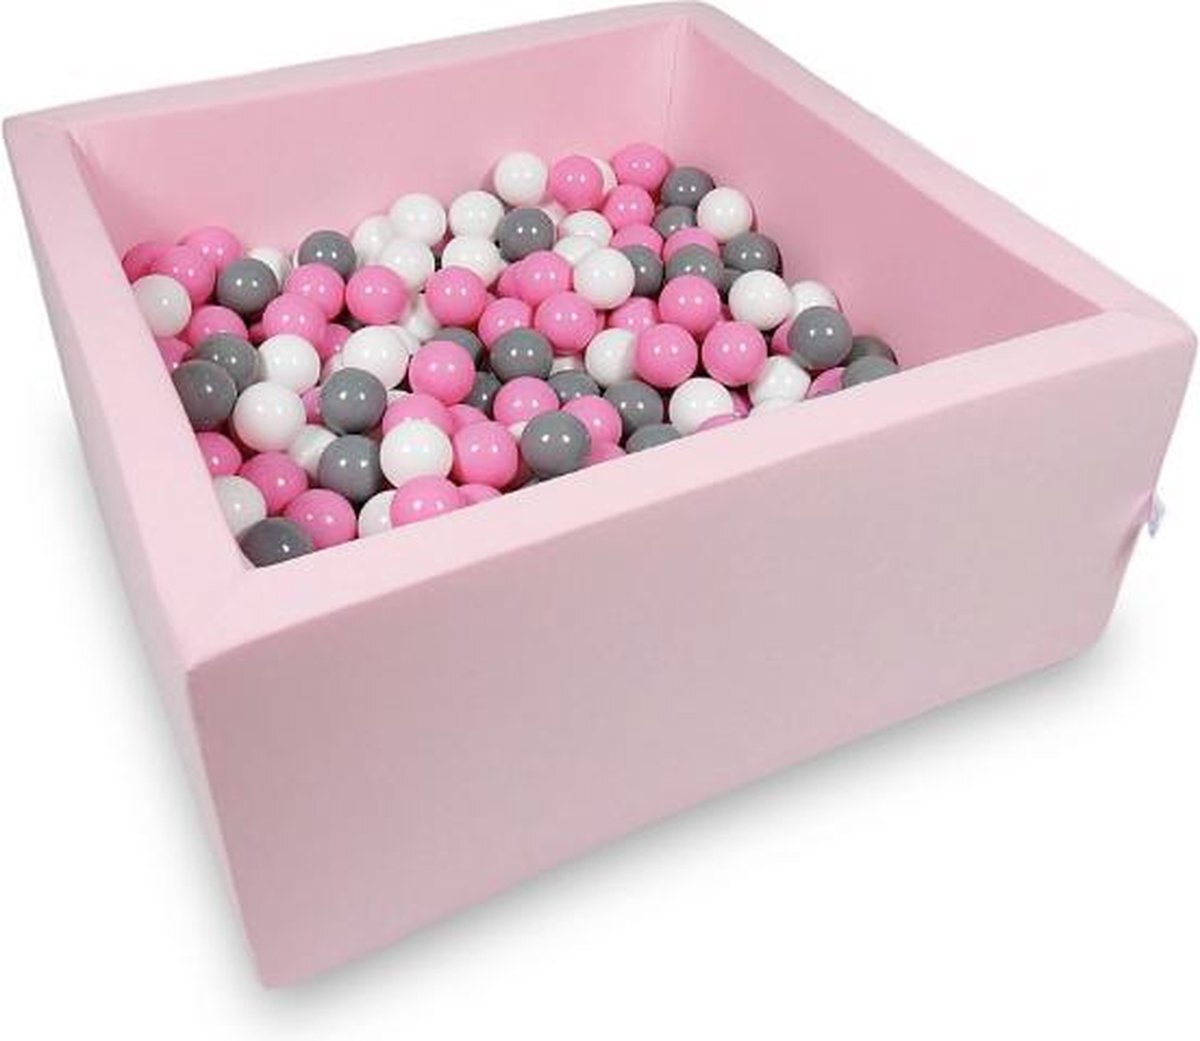 Viking Choice Ballenbak vierkant roze - 400 ballen - 90 x 40 x 40 cm - ballenbad - roze 7 cm ballen